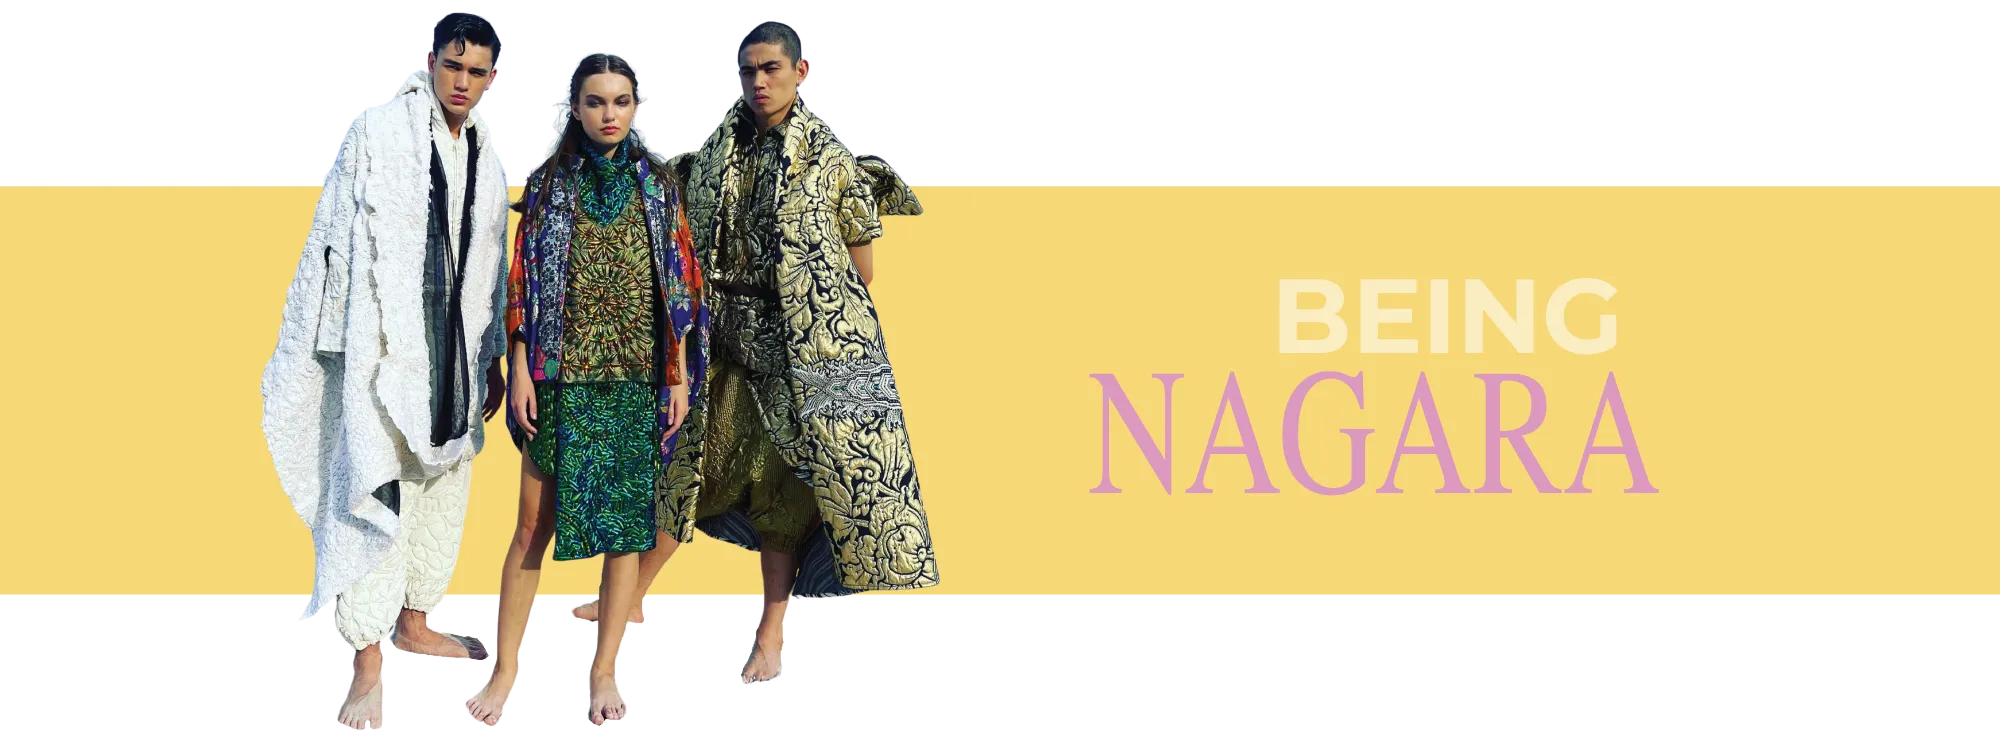 NAGARA - Fashion in Thailand Takes a New High With Creative Thai Fabrics.